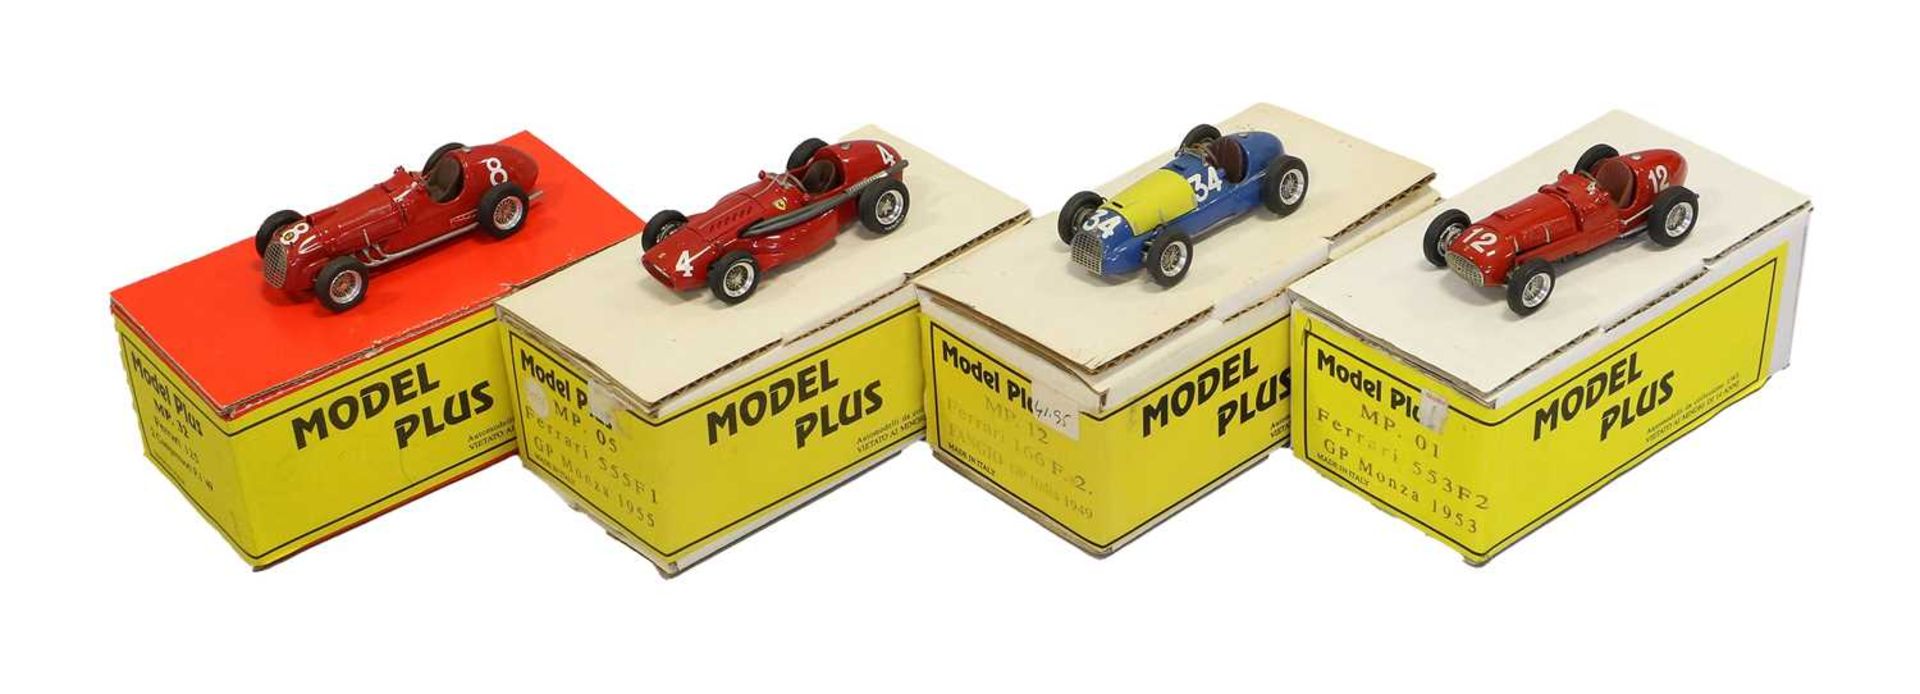 Model Plus Racing Car Group